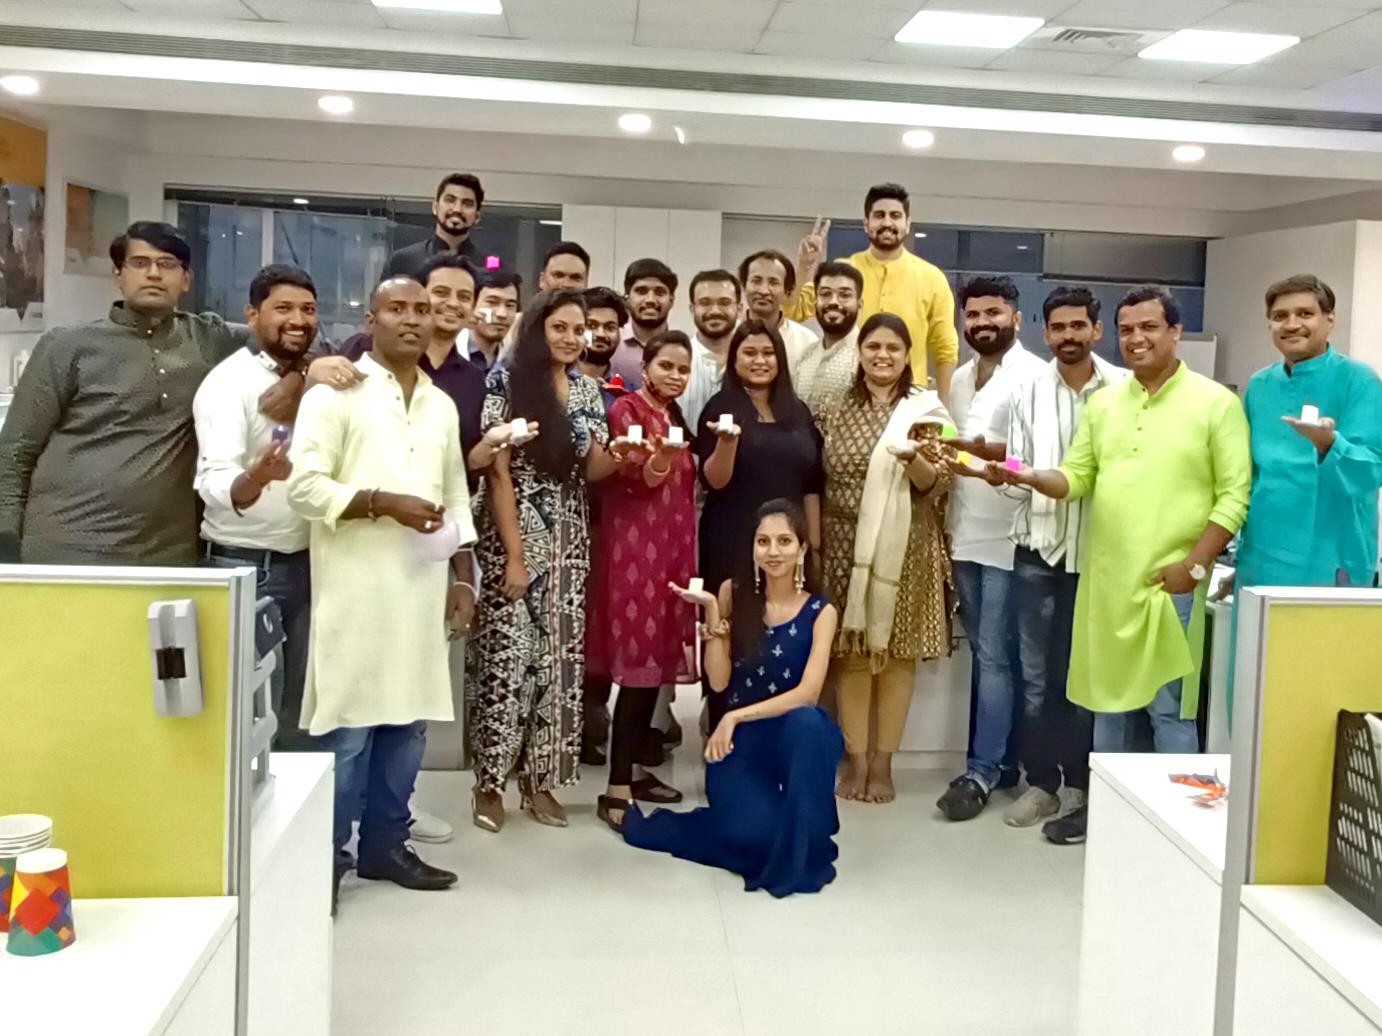 Group of Keller employees celebrating Diwali